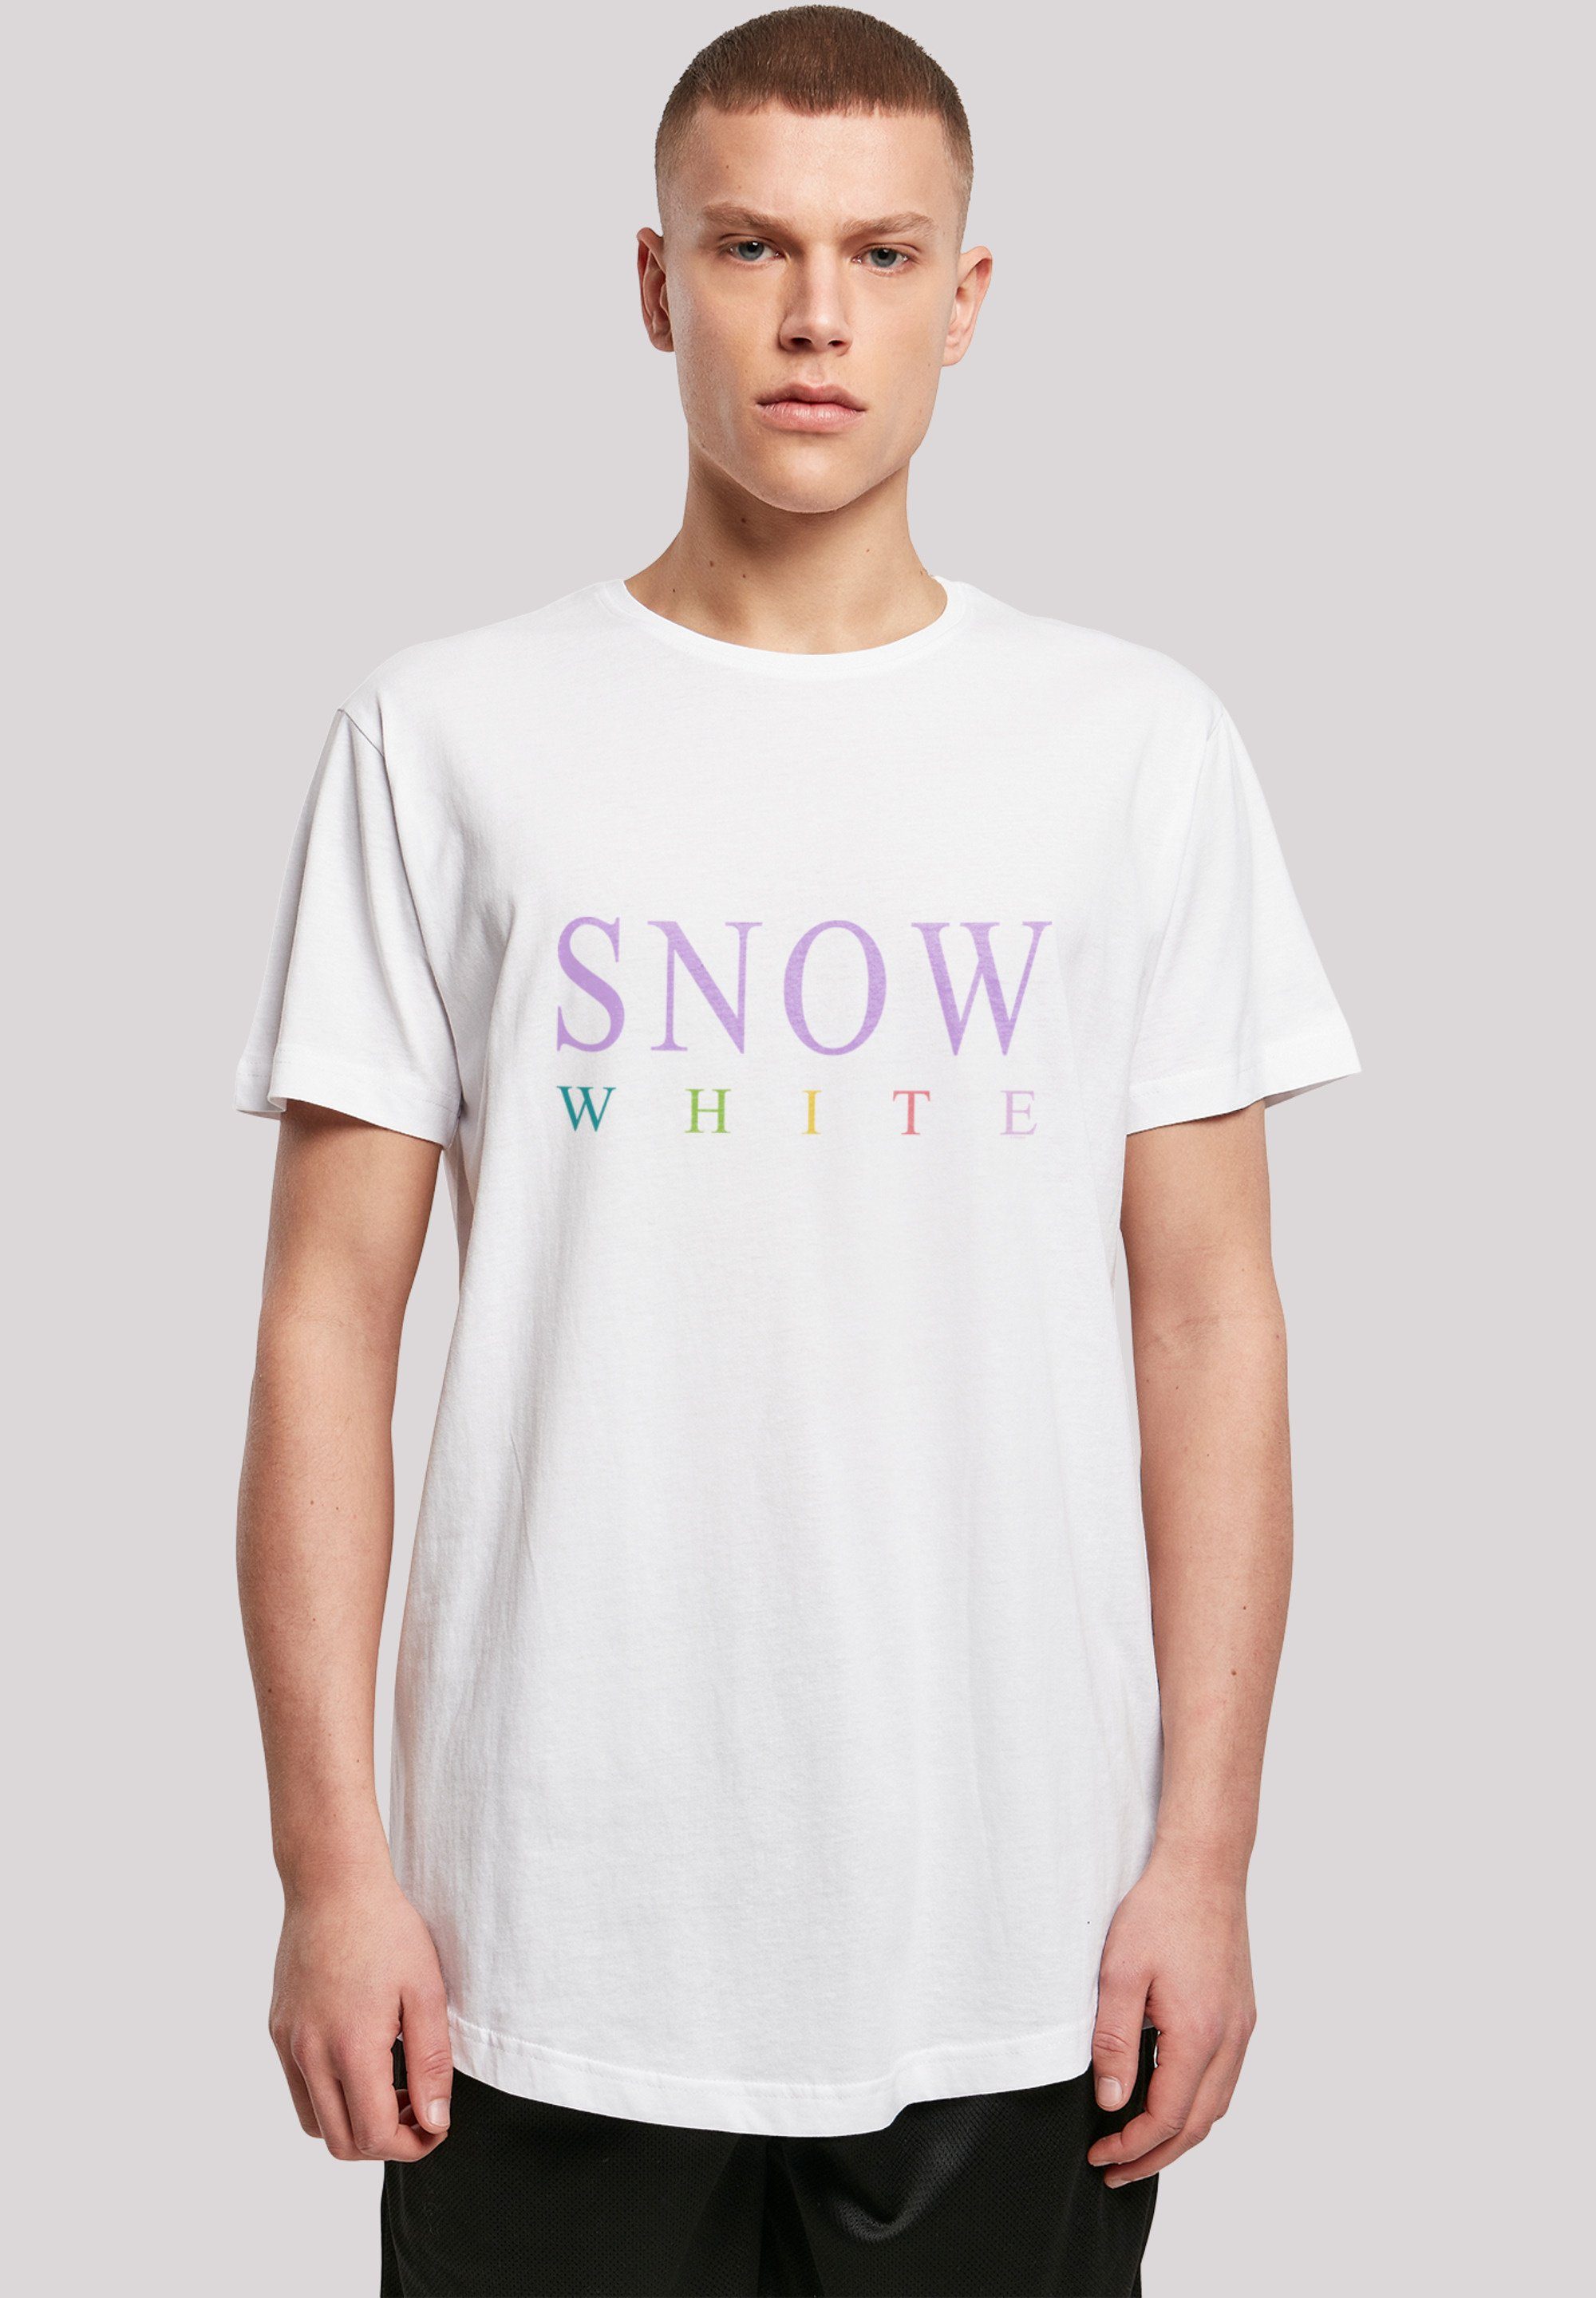 White T-Shirt F4NT4STIC Print Schneewittchen weiß Disney Boys Snow Graphic